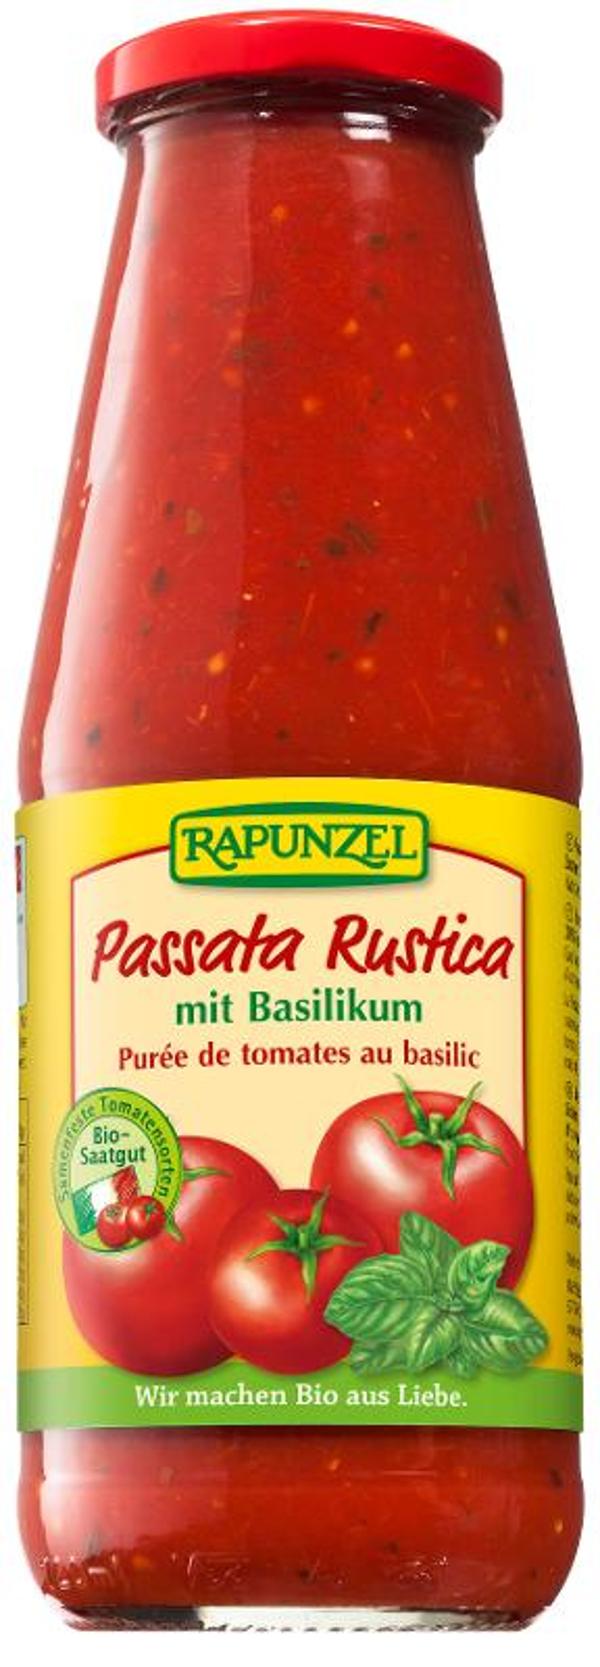 Produktfoto zu Passata Rustica grob passierte Tomaten